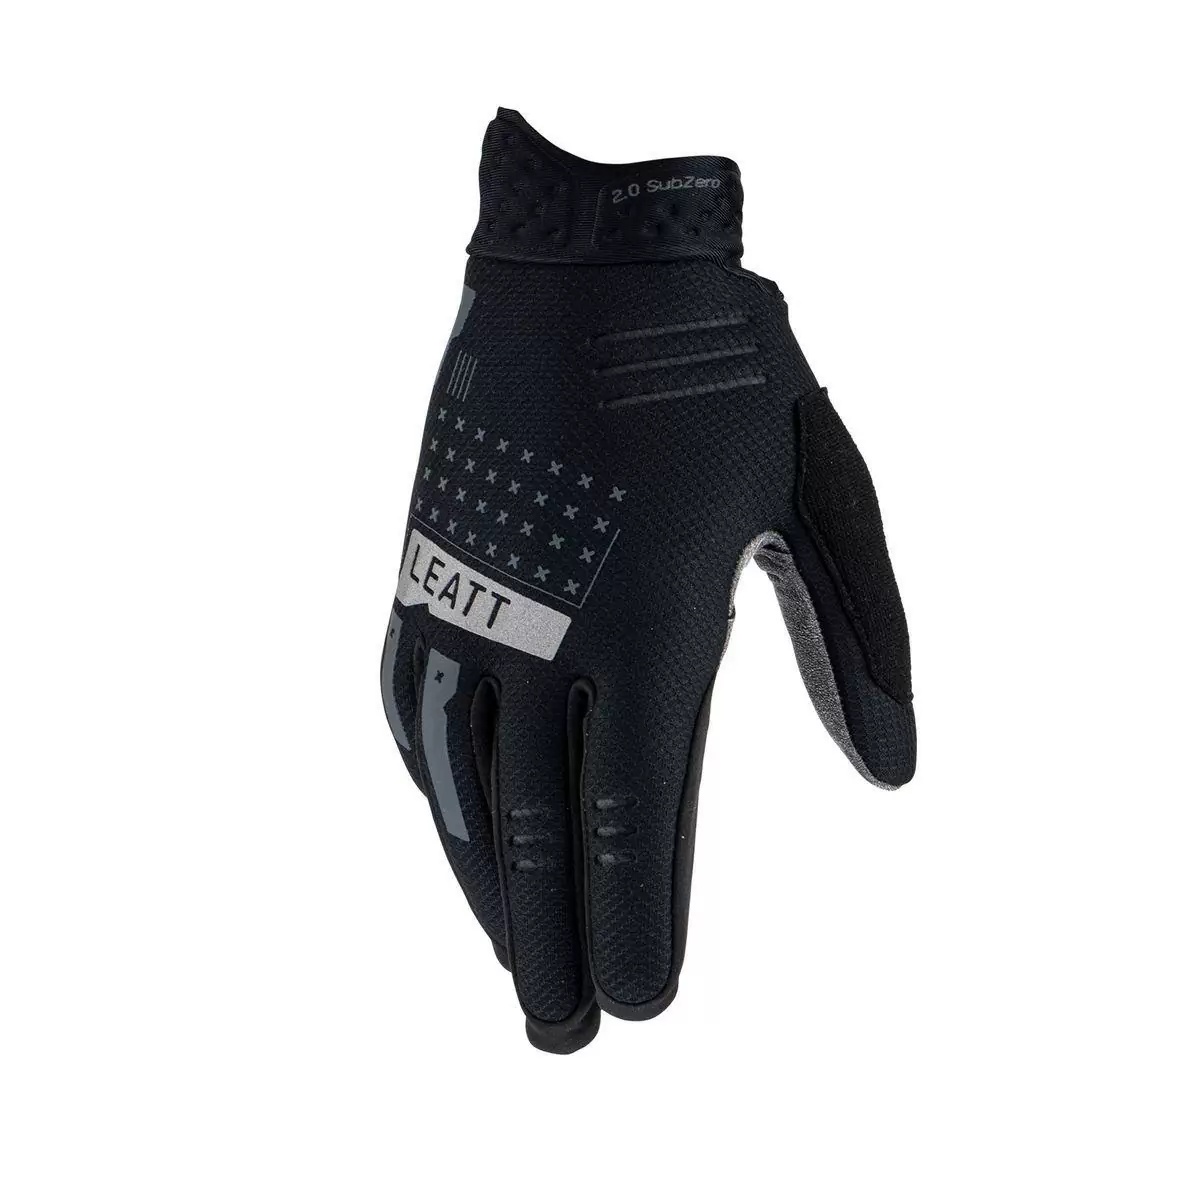 Winter Glove Mtb 2.0 subzero Black size L #2